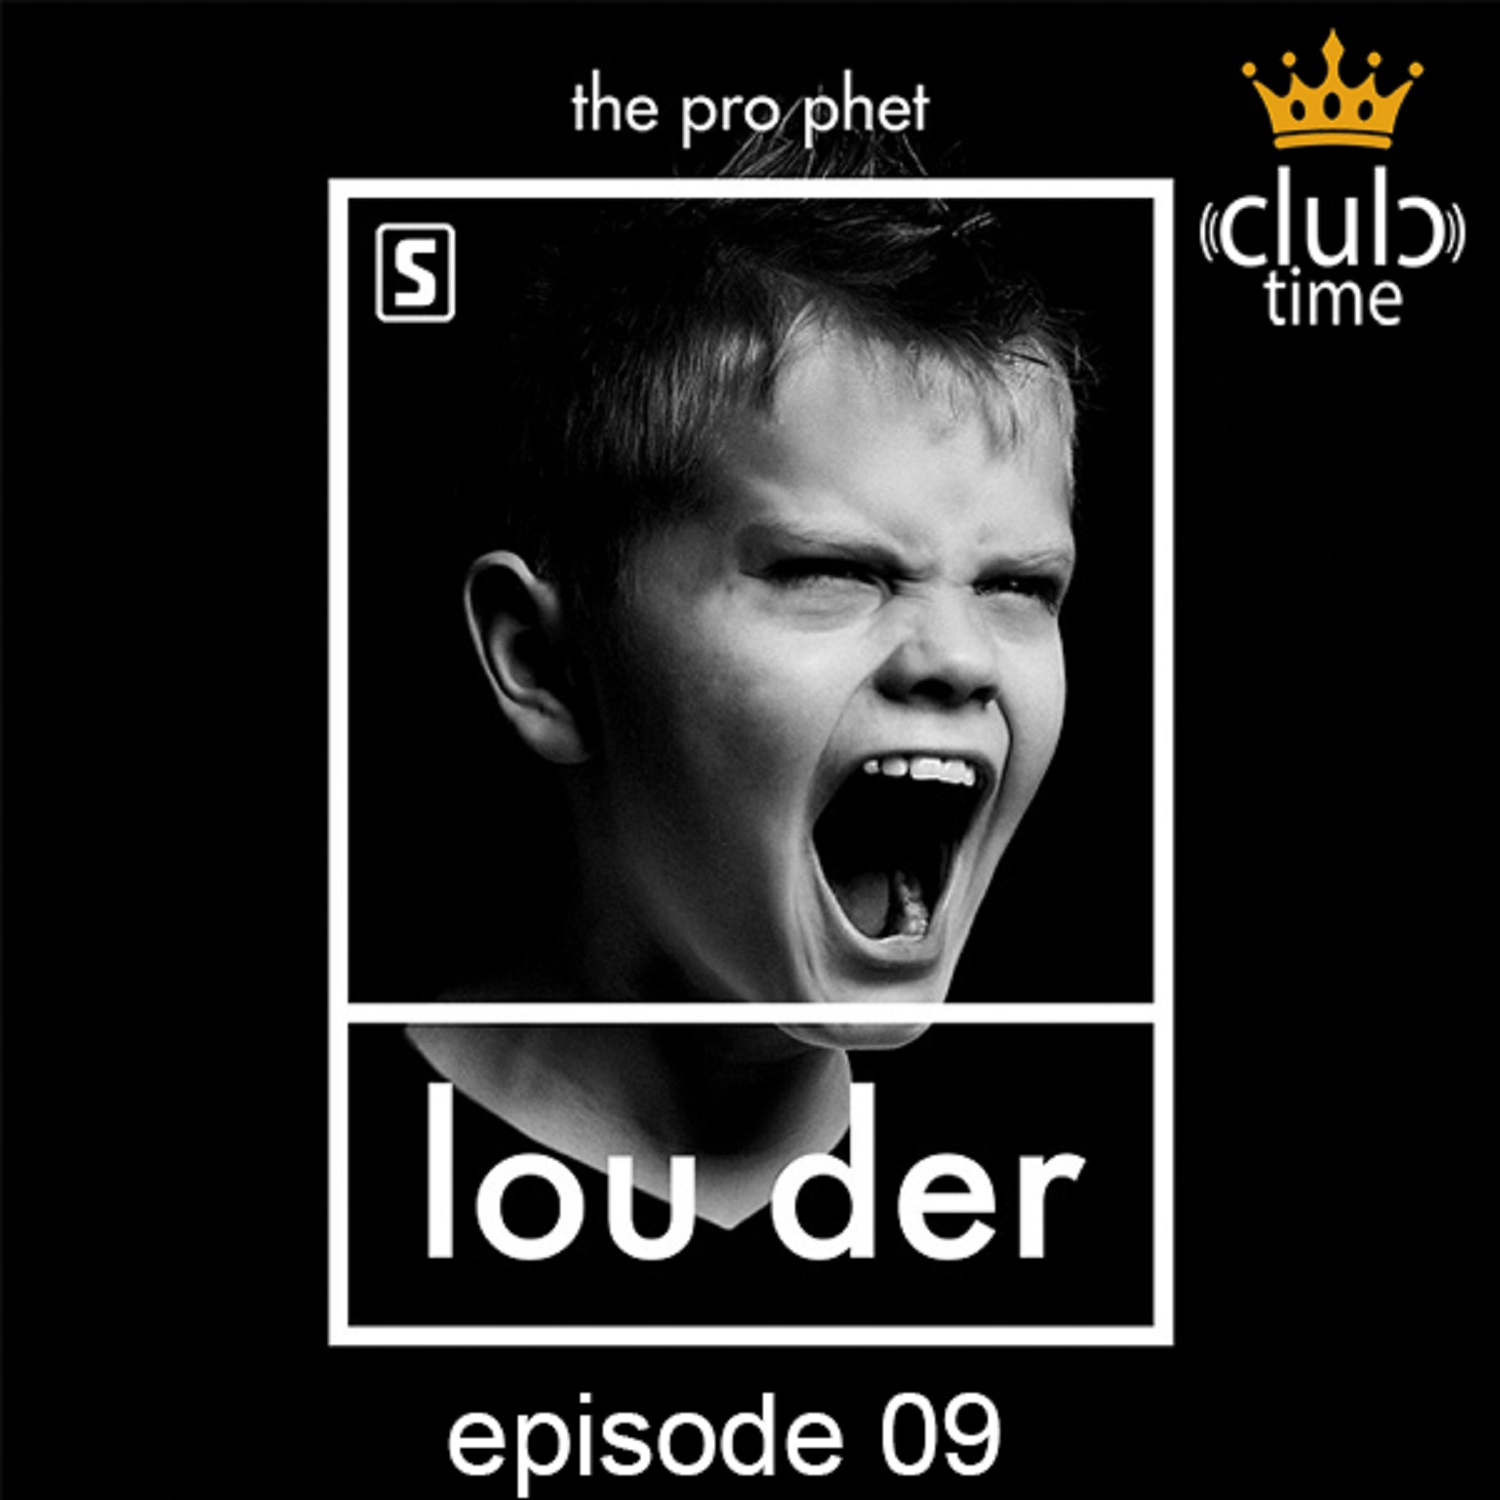 LOUDER (Episode 09)